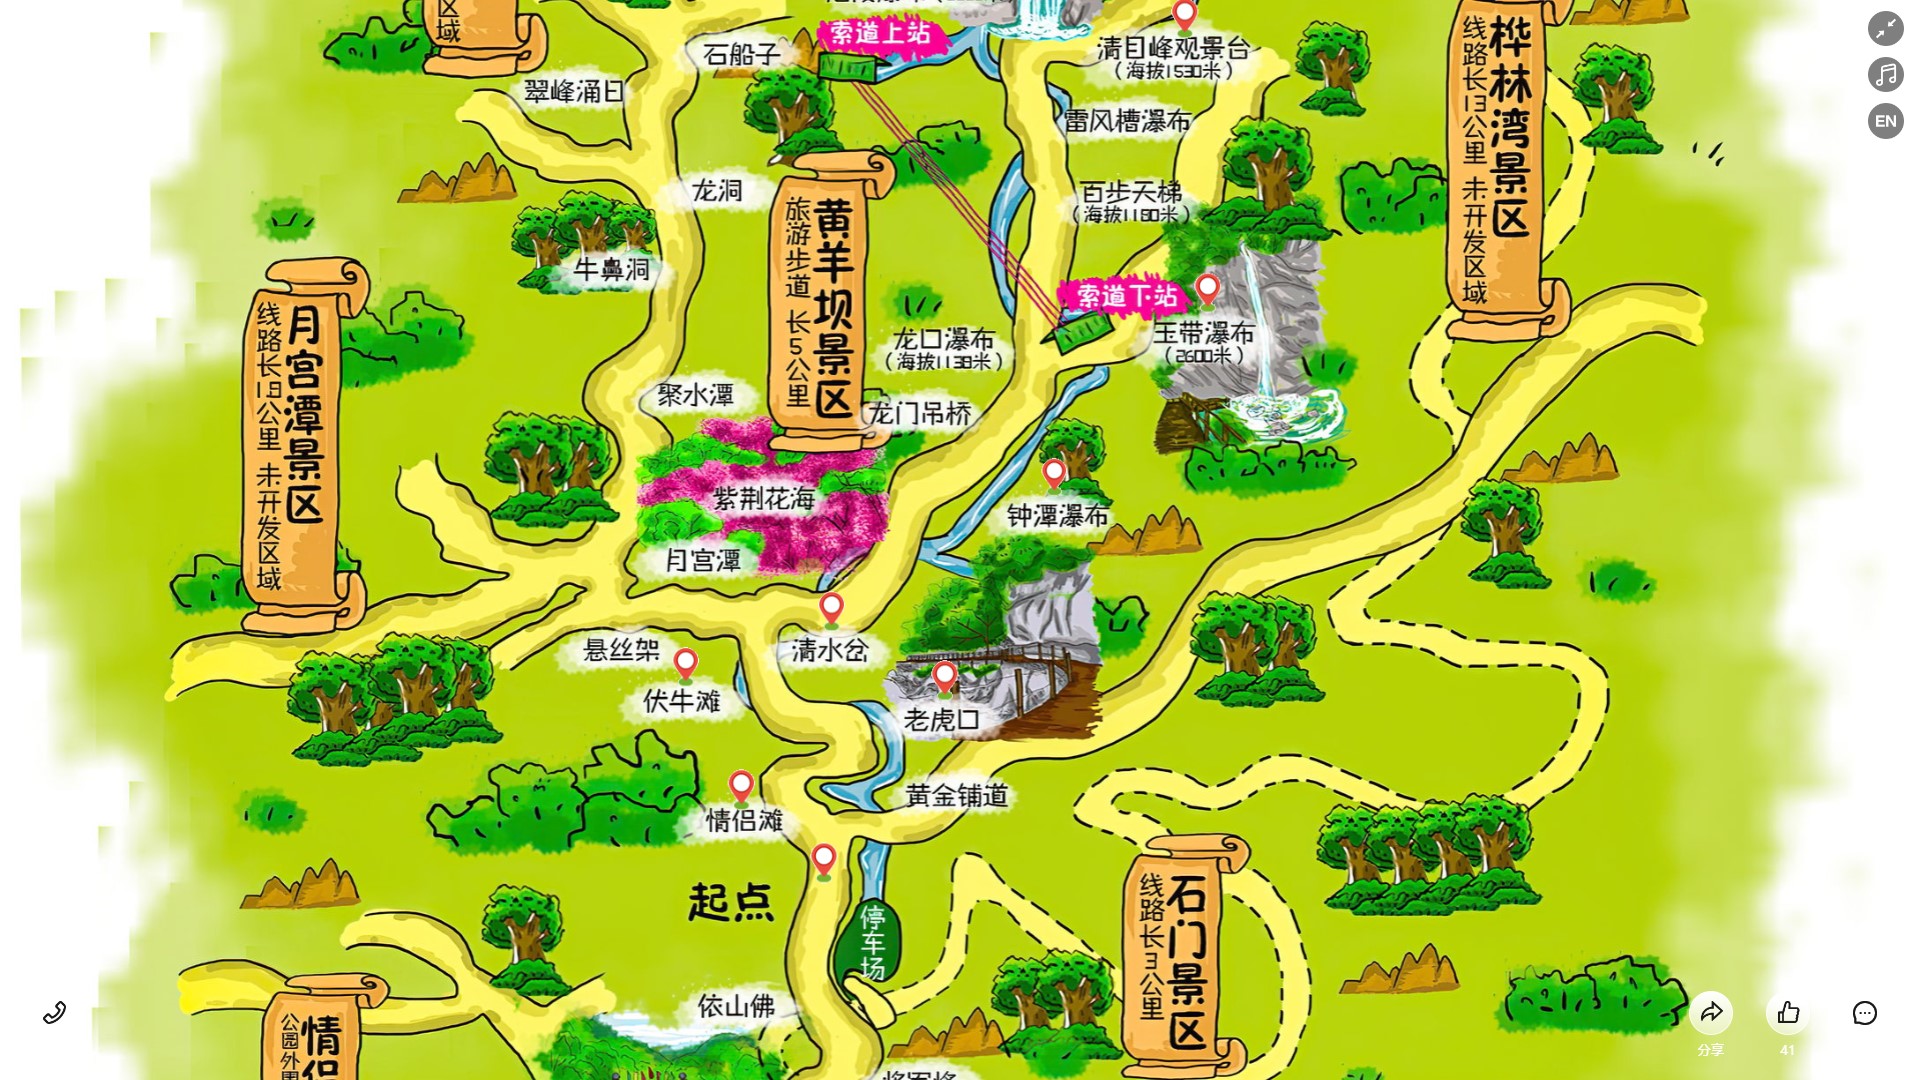 灵川景区导览系统